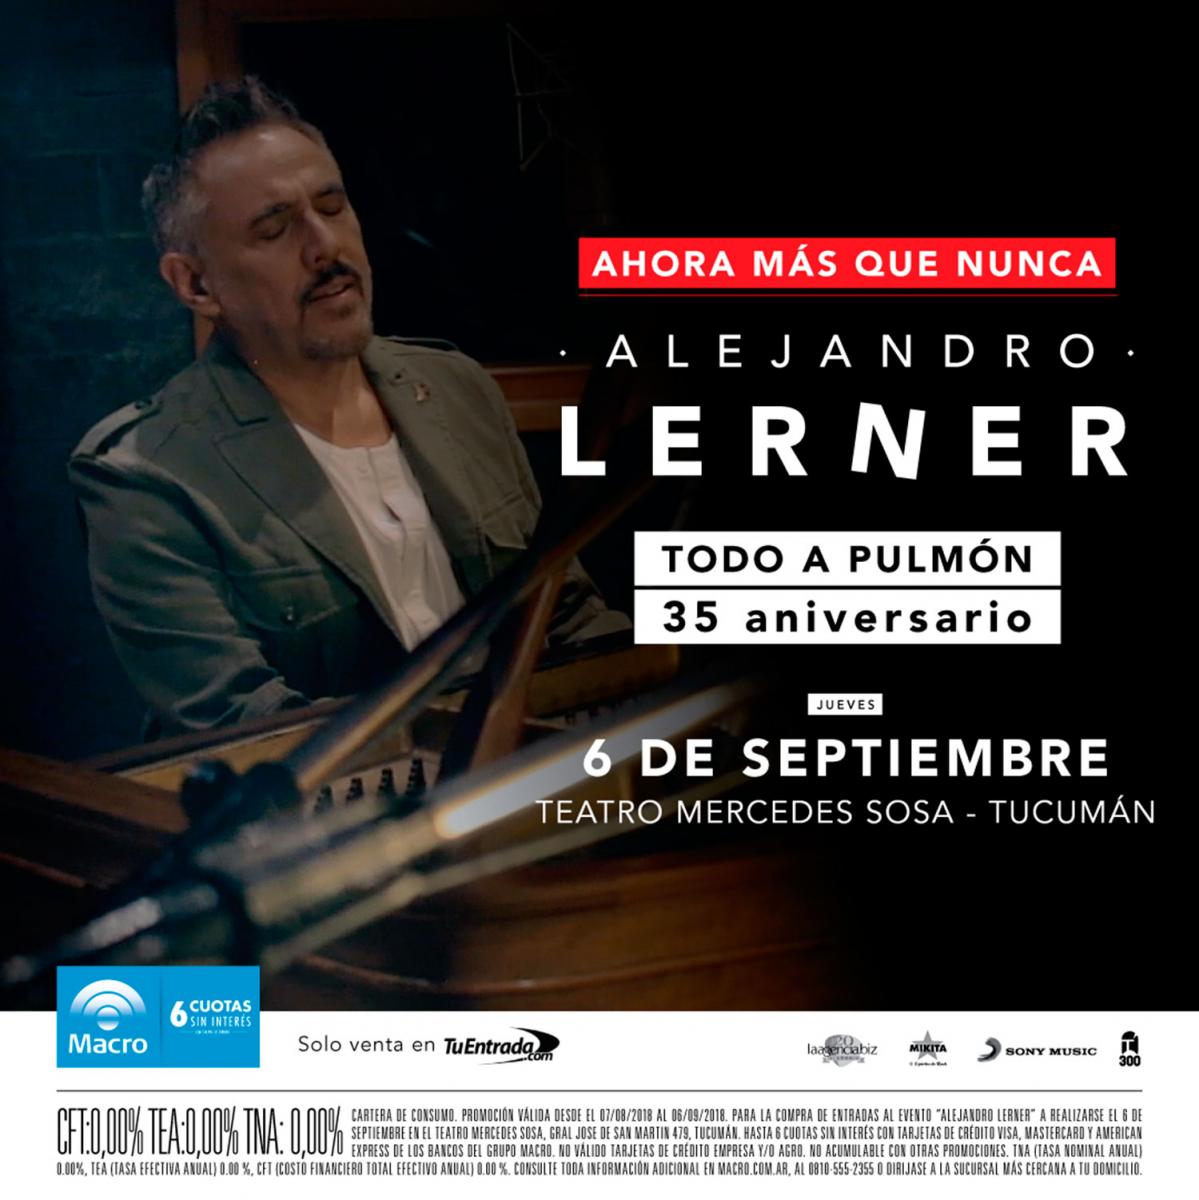 Después de 35 años, Alejandro Lerner revive Todo a pulmón